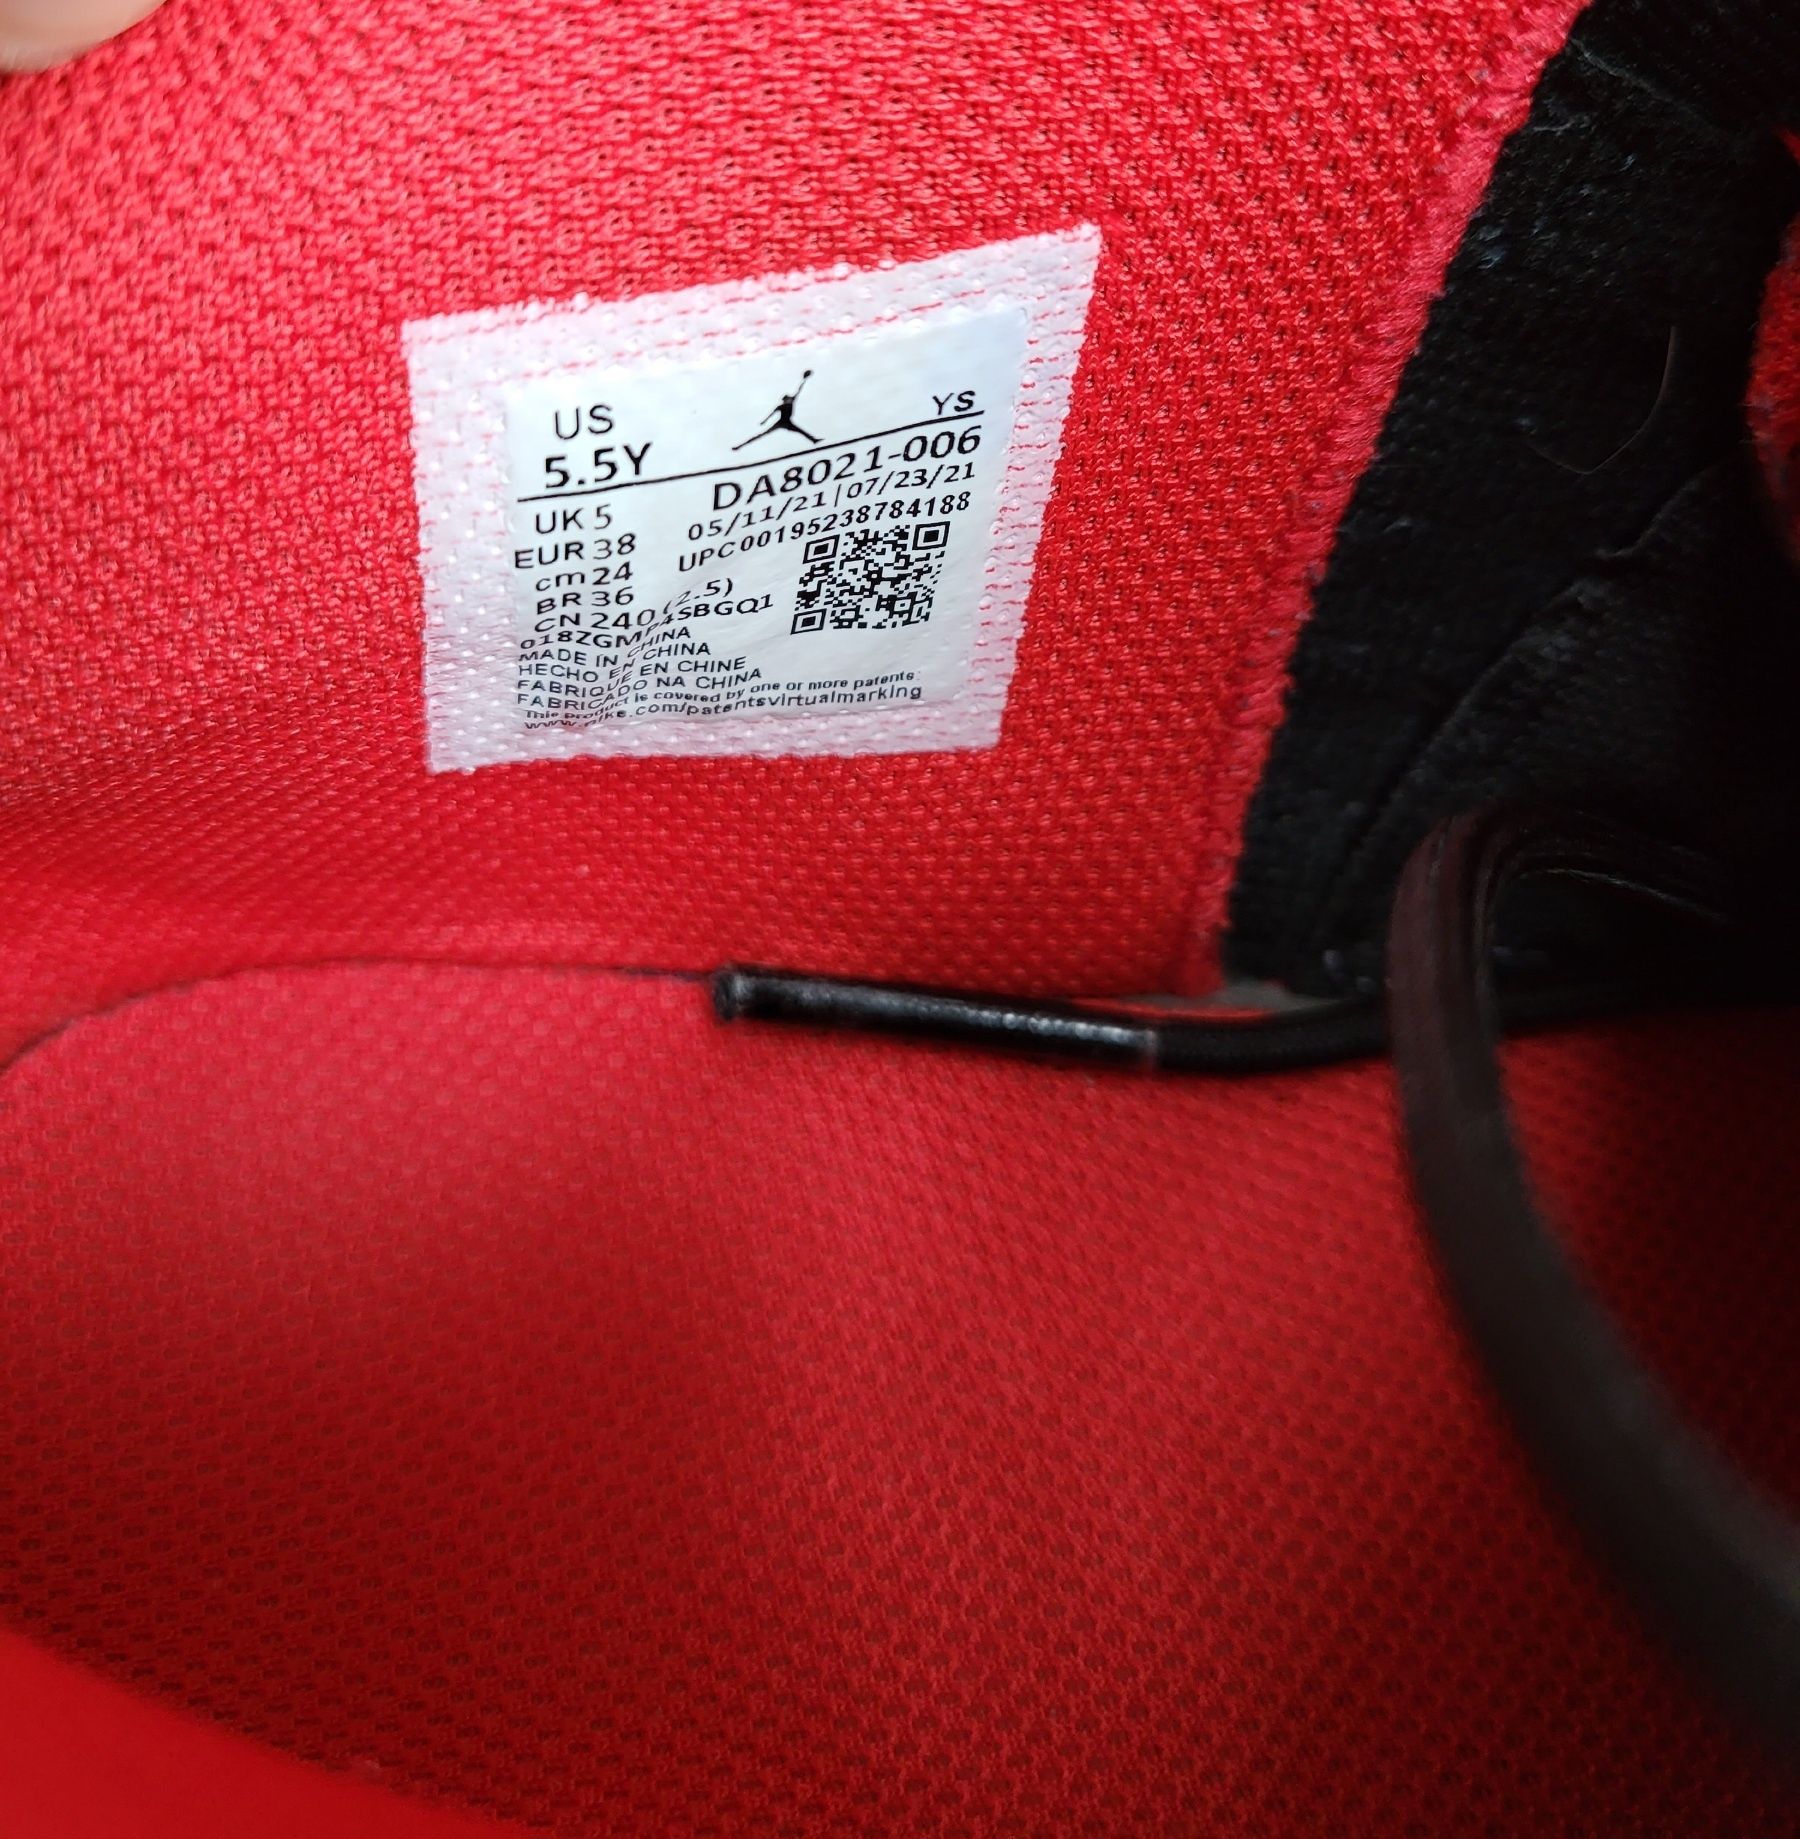 Nike Air Jordan Max Aura 3